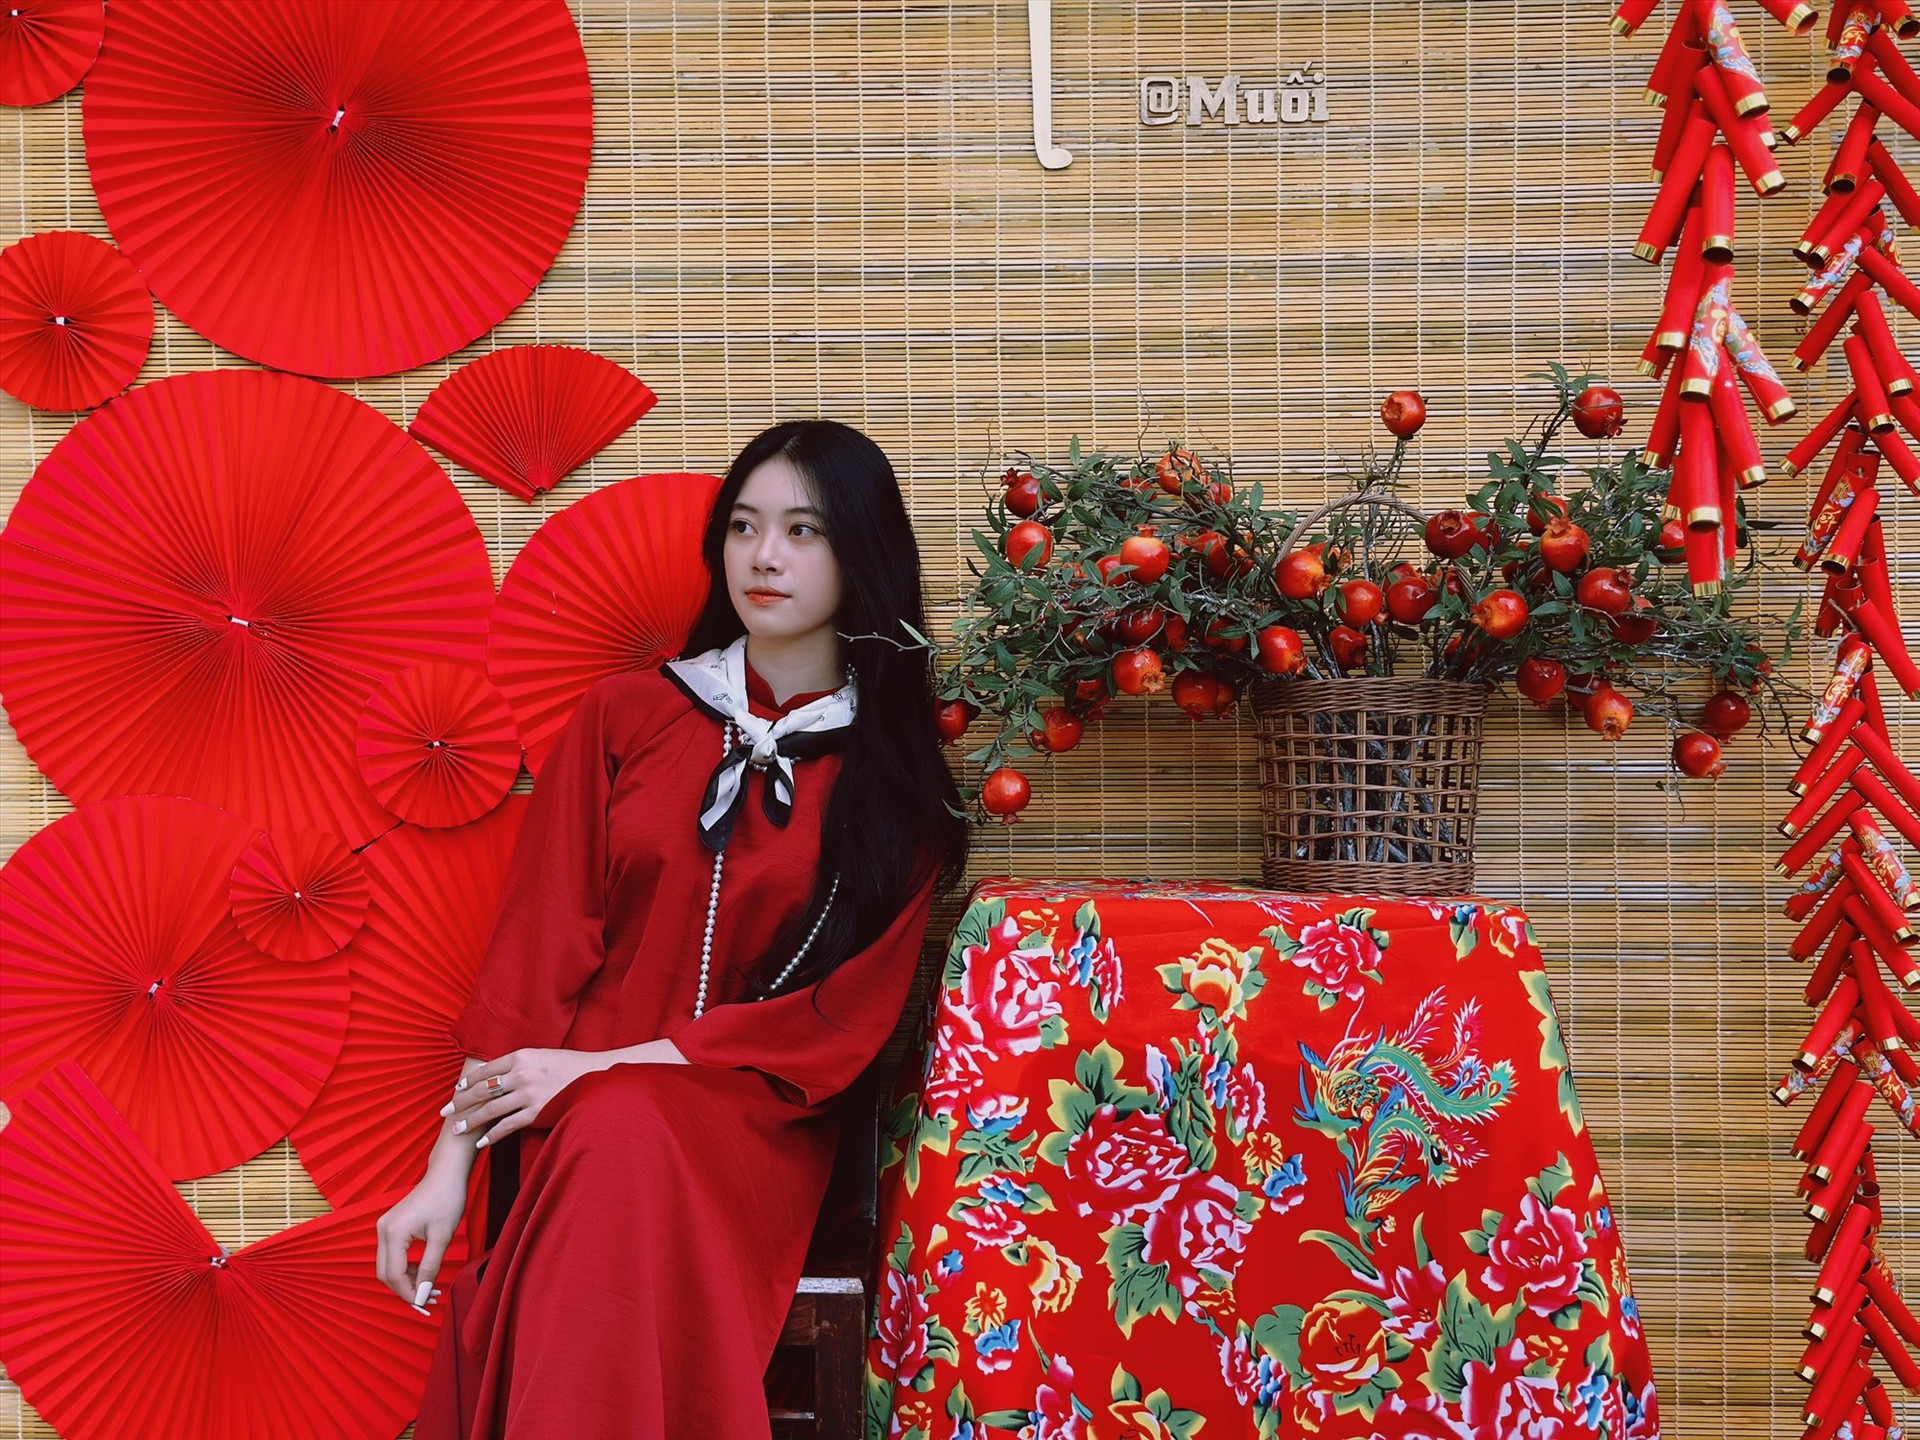 Áo dài là trang phục truyền thống luôn gắn liền với ngày Tết của người Việt. “Concept” chụp ảnh với những mẫu áo dài cổ điển vào thập niên 80 - 90 của thế kỷ trước đang được nhiều bạn trẻ trên địa bàn tỉnh hào hứng thực hiện